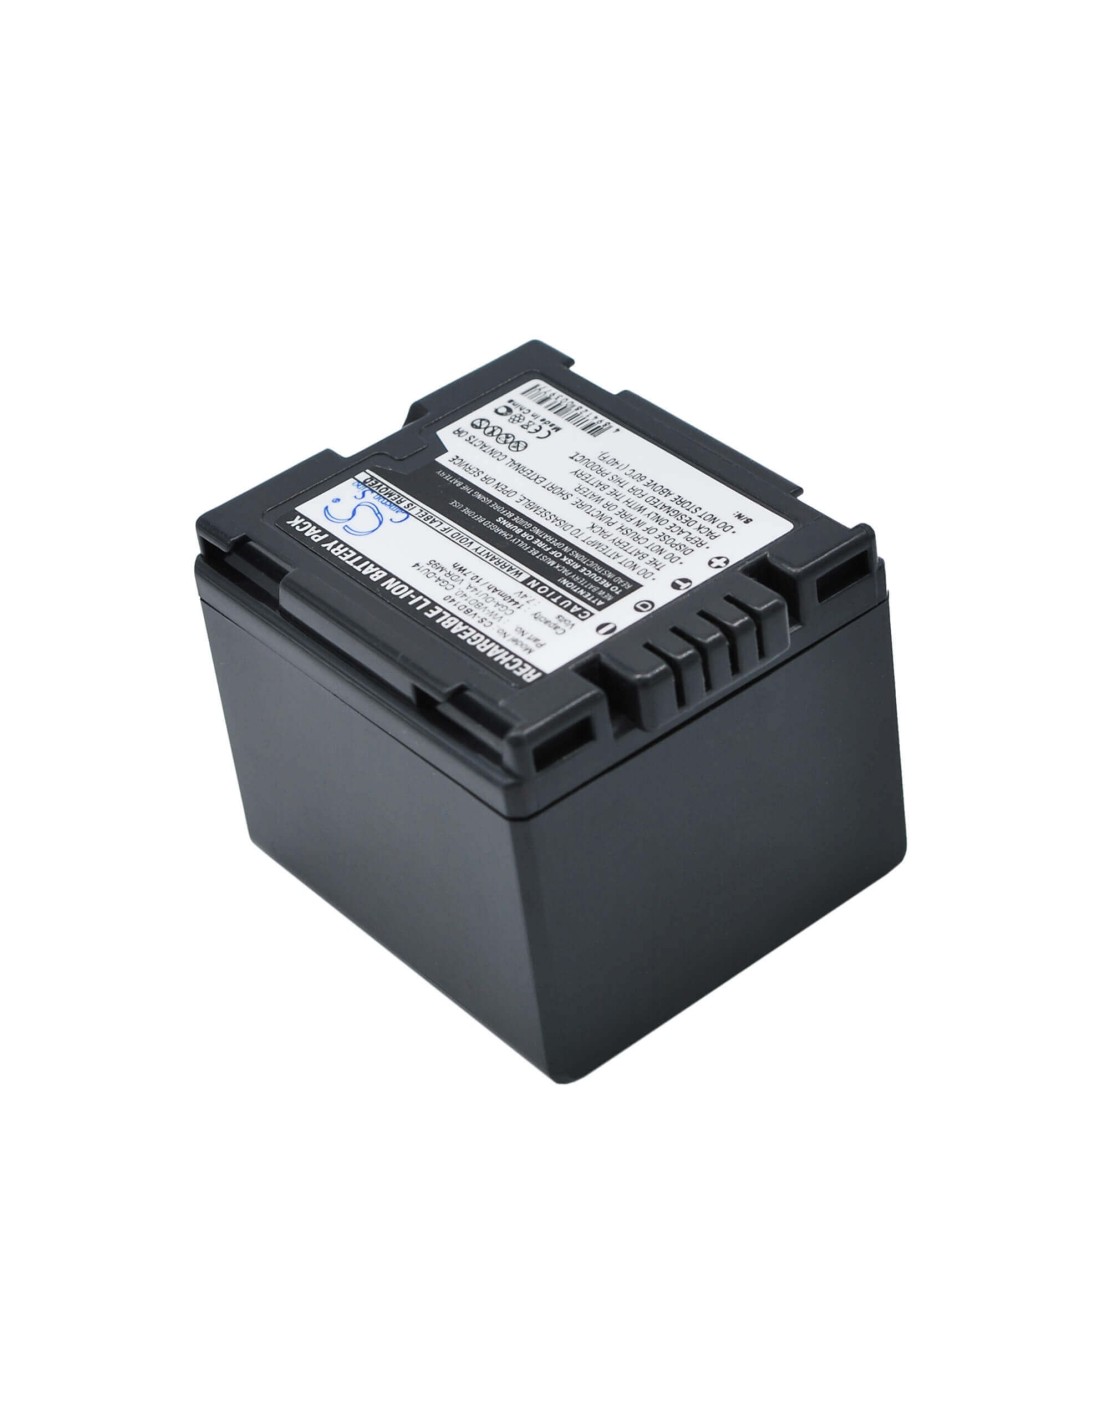 Battery for Hitachi Dz-bd70, Dz-bd7h, Dz-bx37e, Dz-gx20, 7.4V, 1440mAh - 10.66Wh